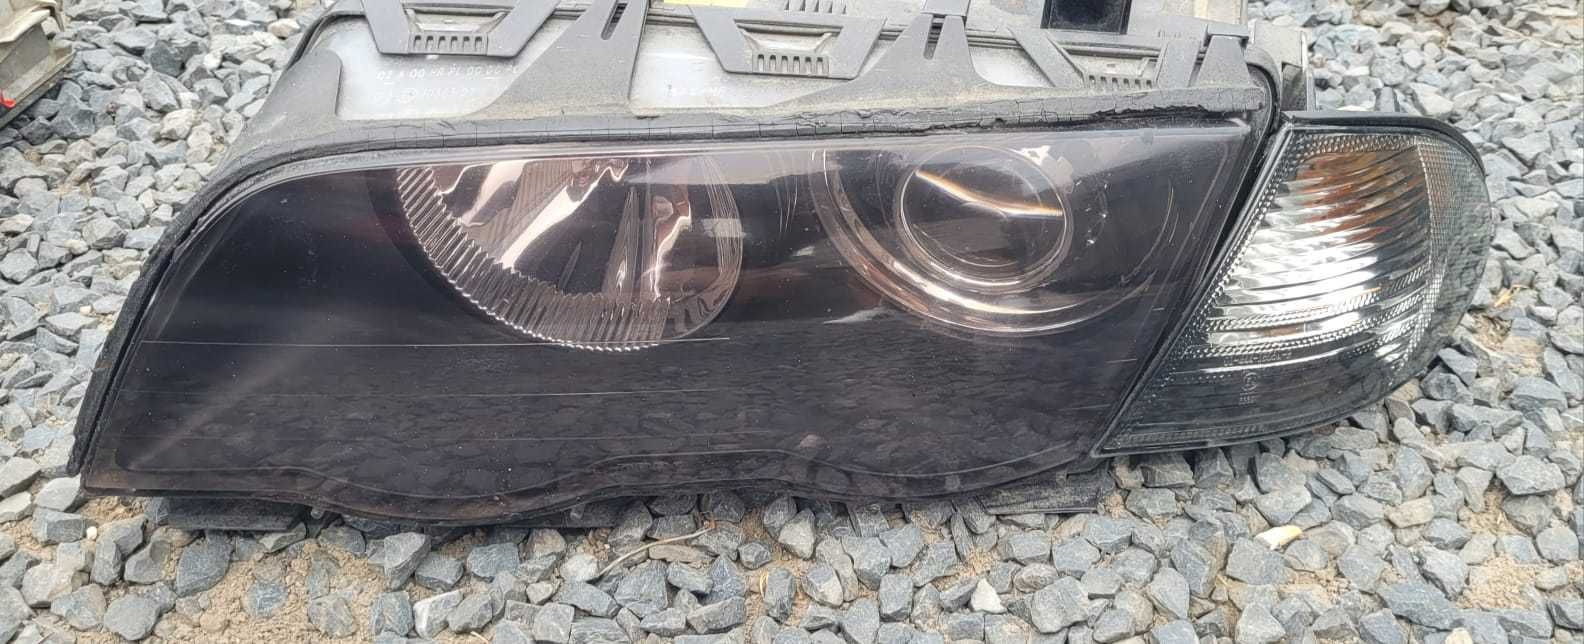 Lampy BMW 3 E46 xenon komplet